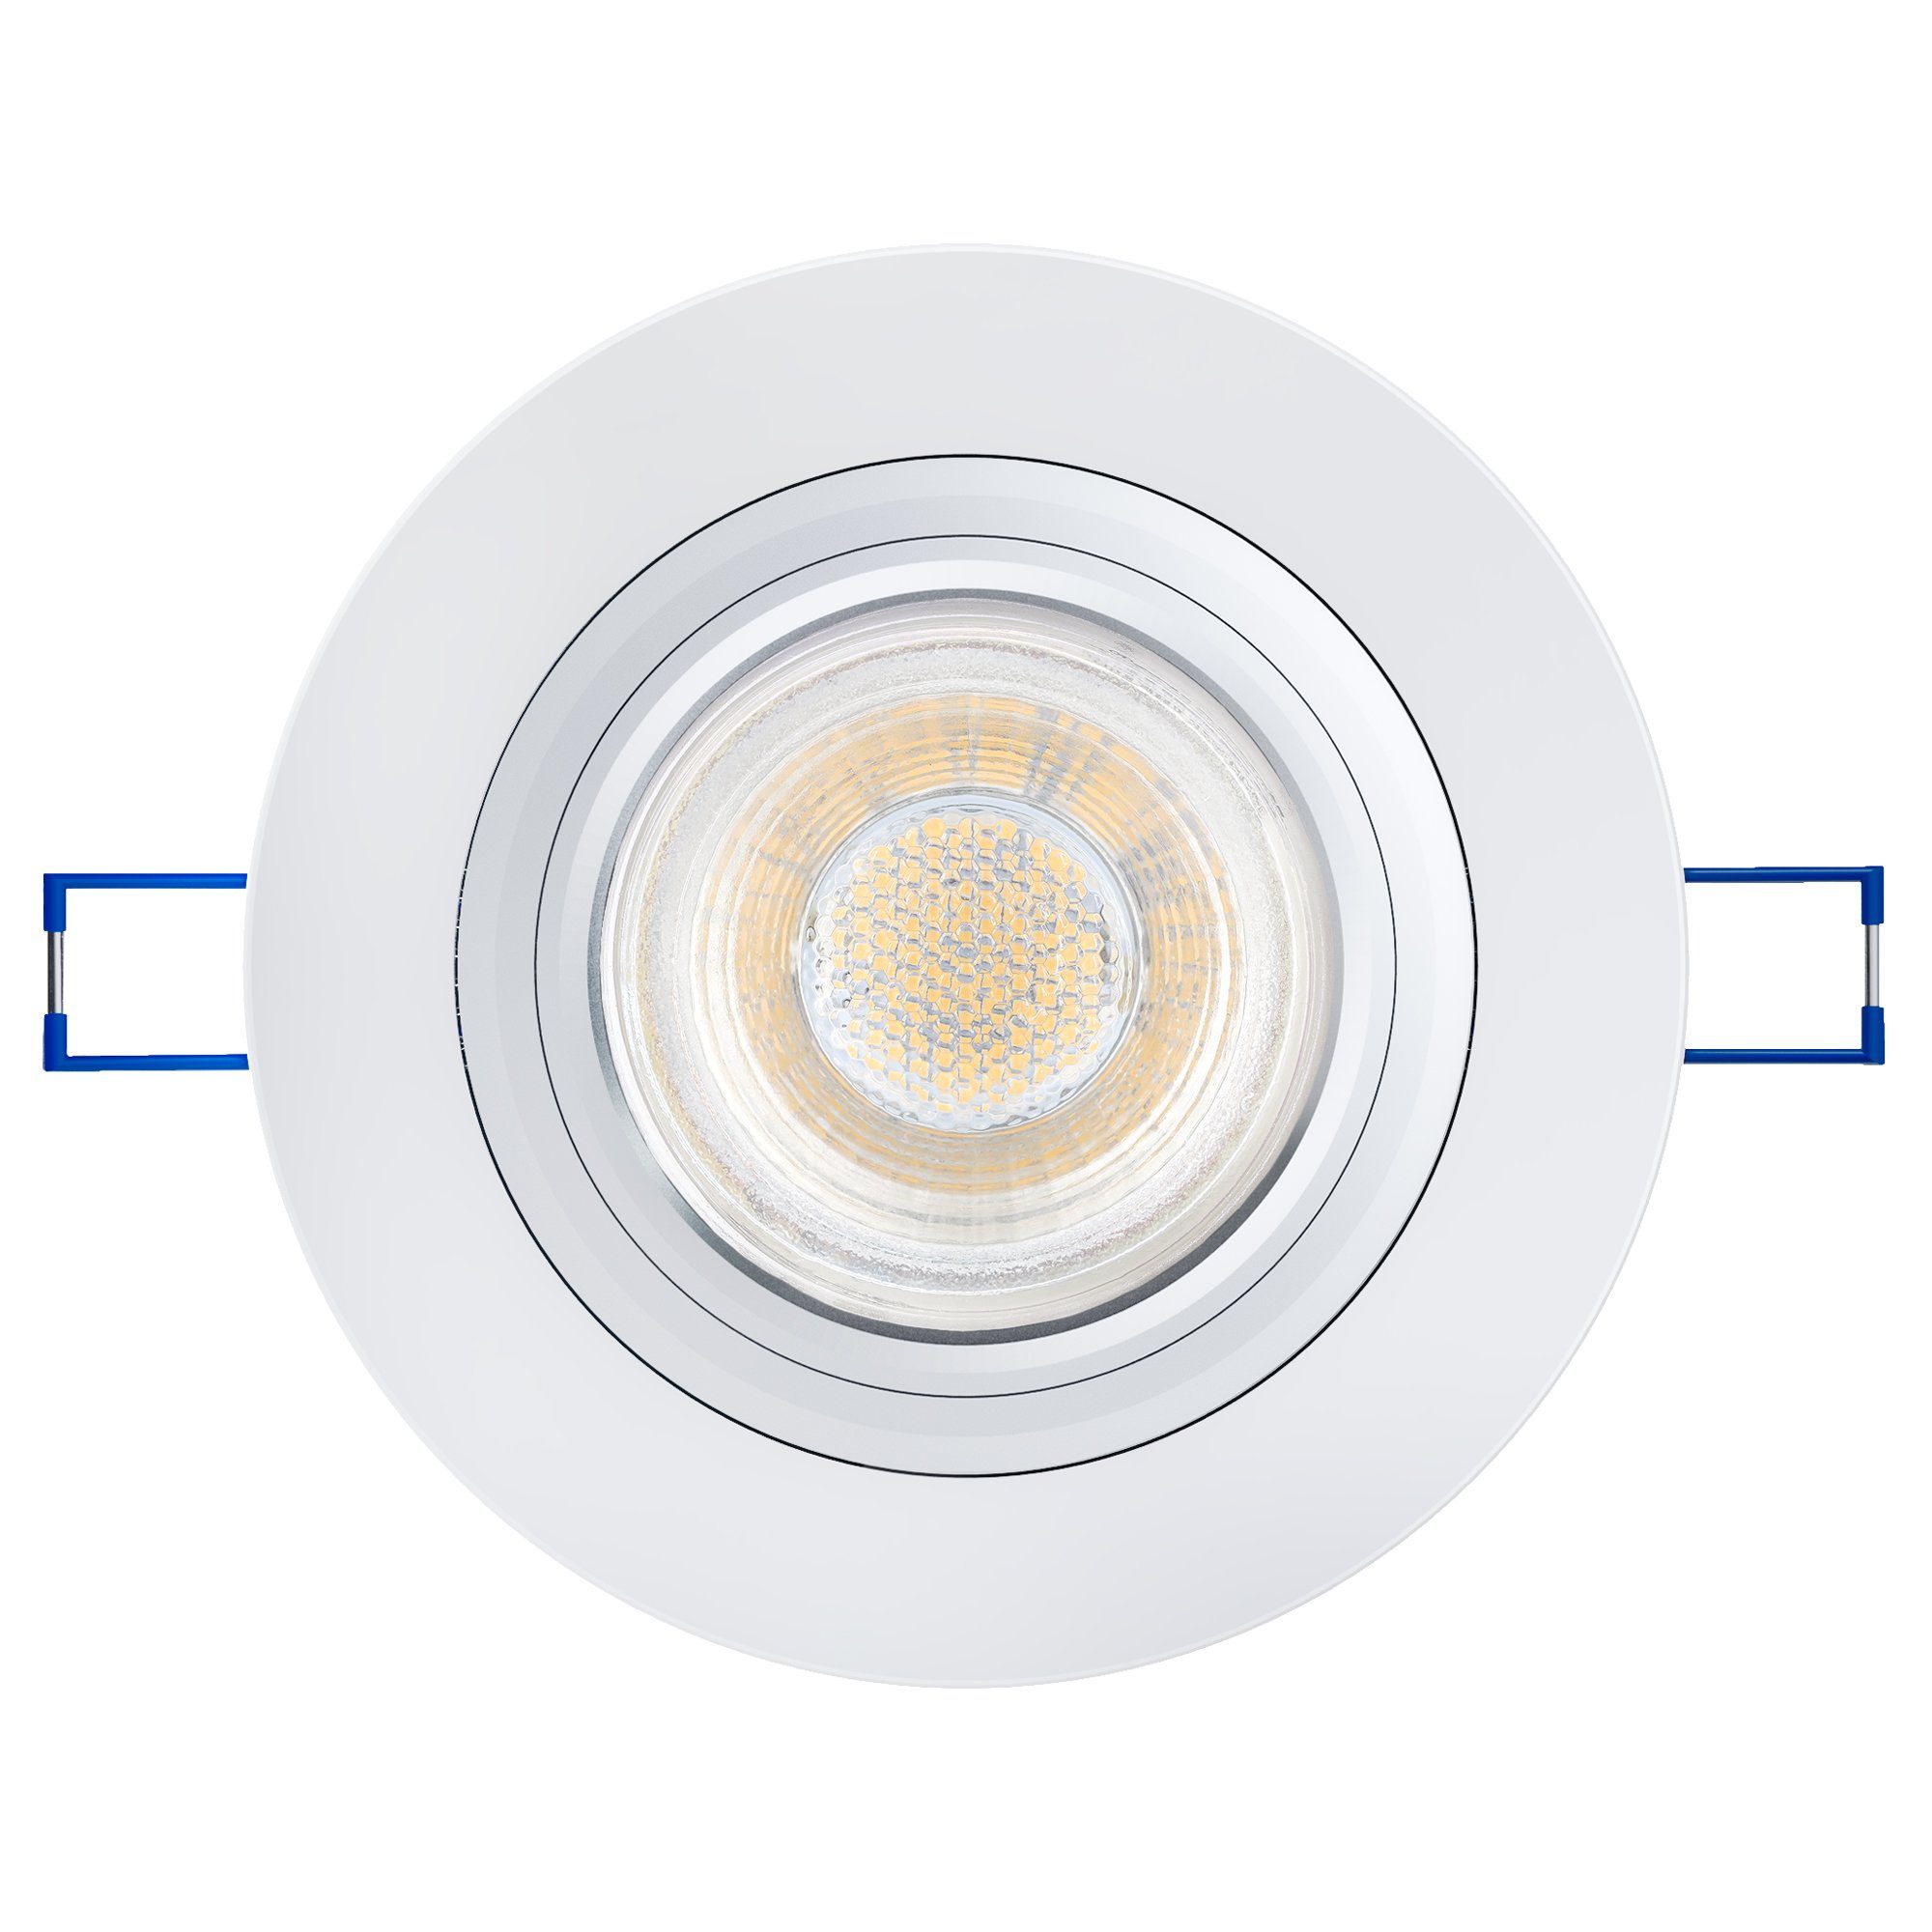 SSC-LUXon LED Einbaustrahler Design klar Glas LED Einbauleuchte in rund GU10 Warmweiß Lampe, mit LED